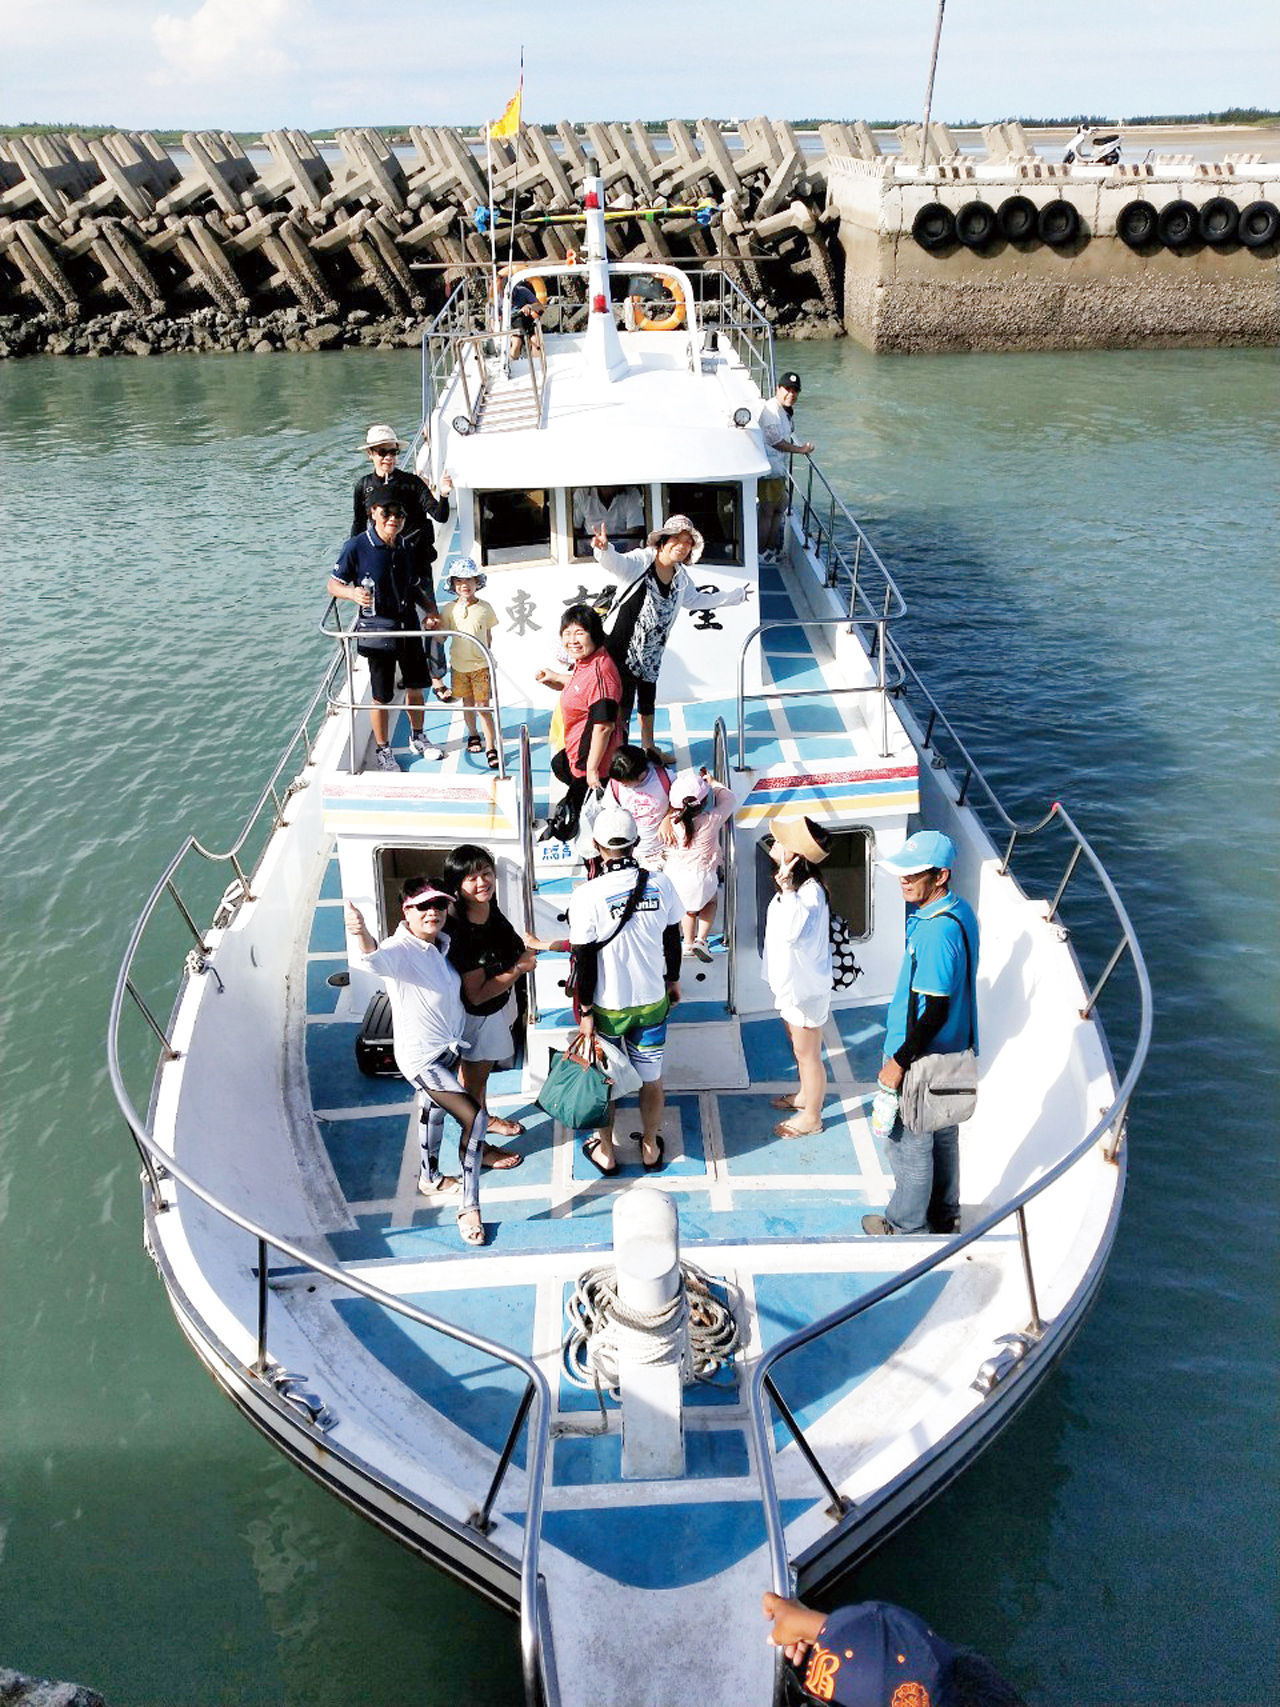 1967年成立的「大慶旅運社」，是澎湖第一家註冊的旅行社，獨家代理高雄到馬公航線的台澎輪客運、貨運業務20餘年。大慶提供